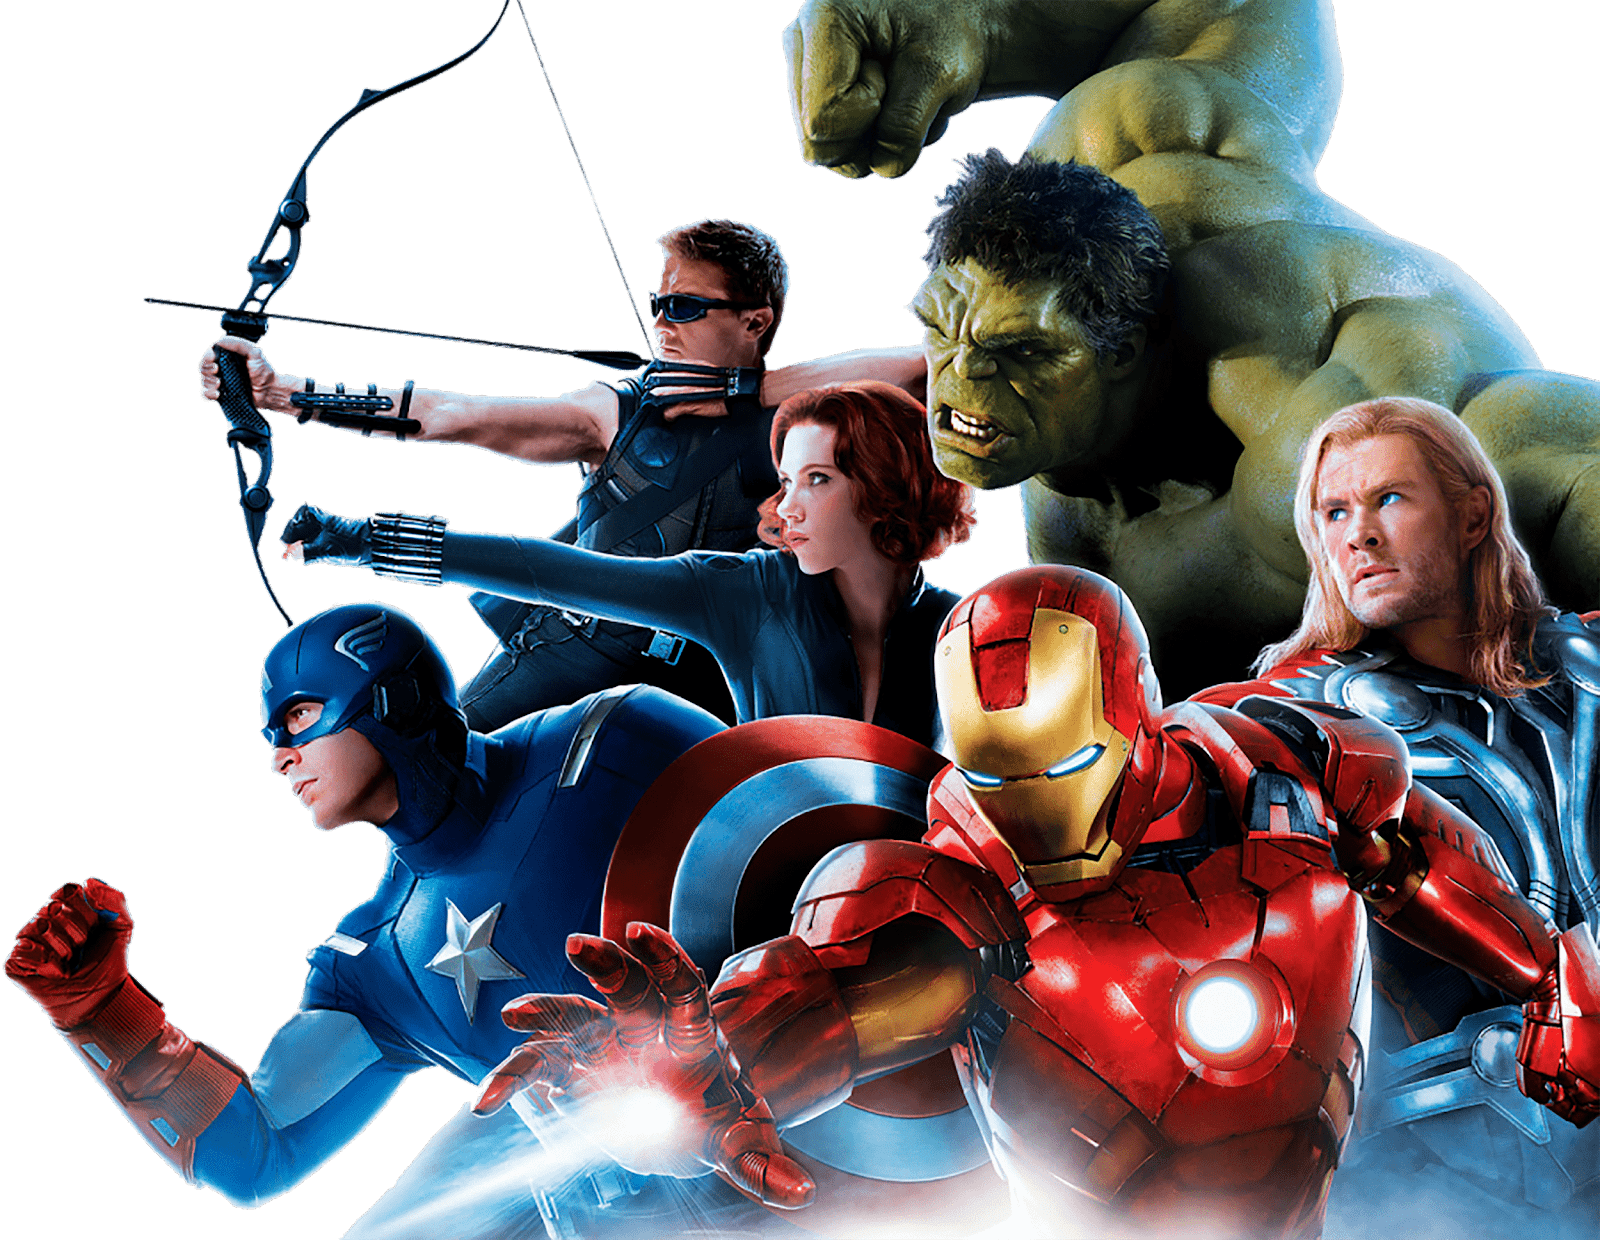 38 imagenes de los personajes de Avengers en png para descargar gratis